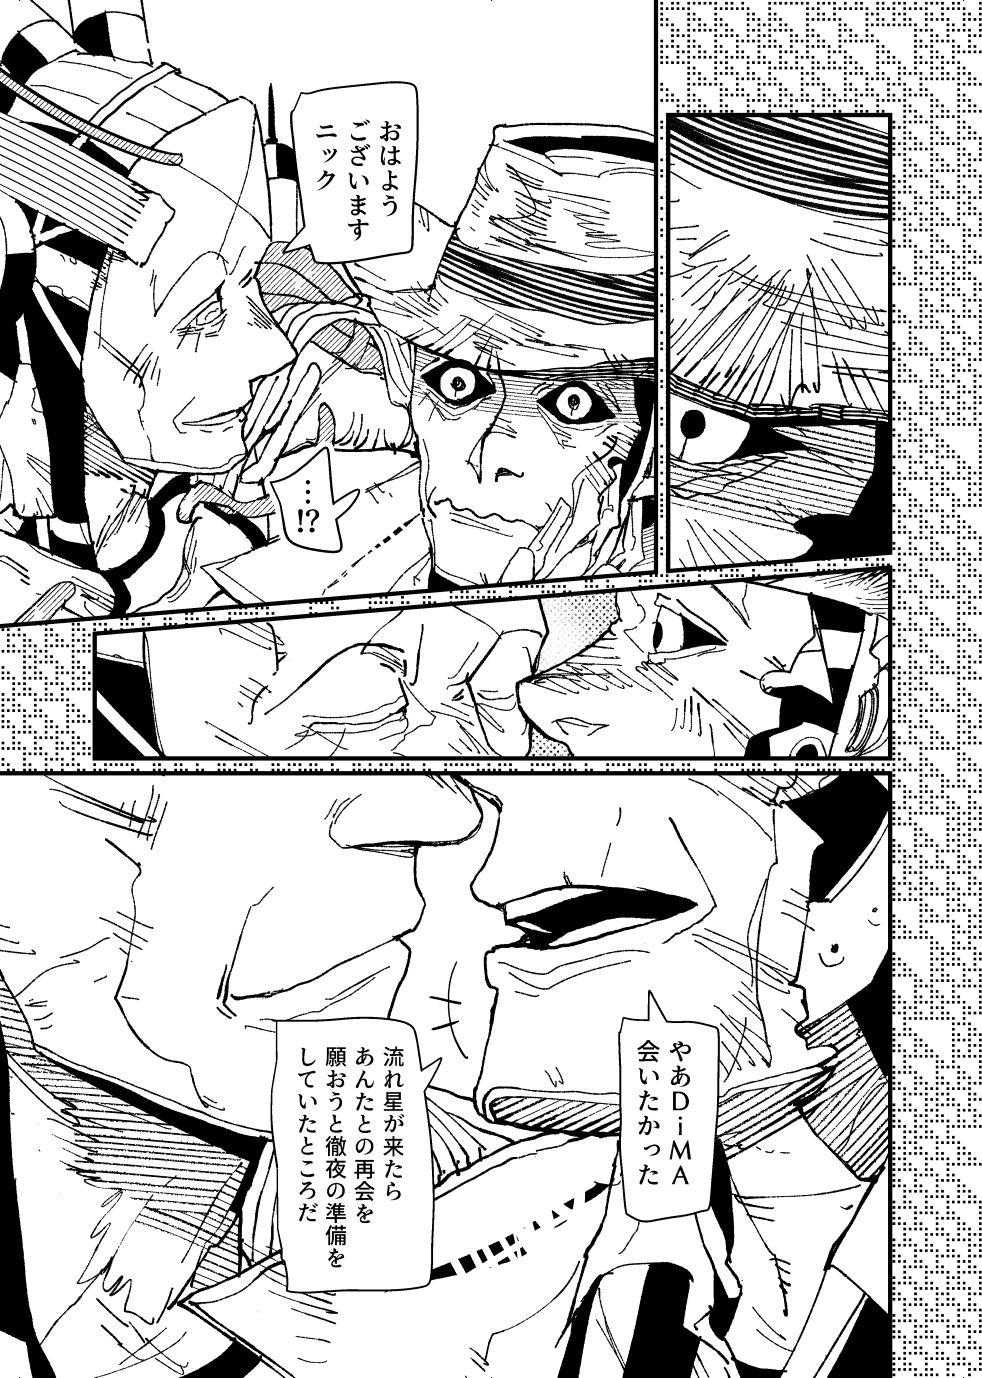 [Tanokura] FO4 [R18] Dimaniku Manga 8